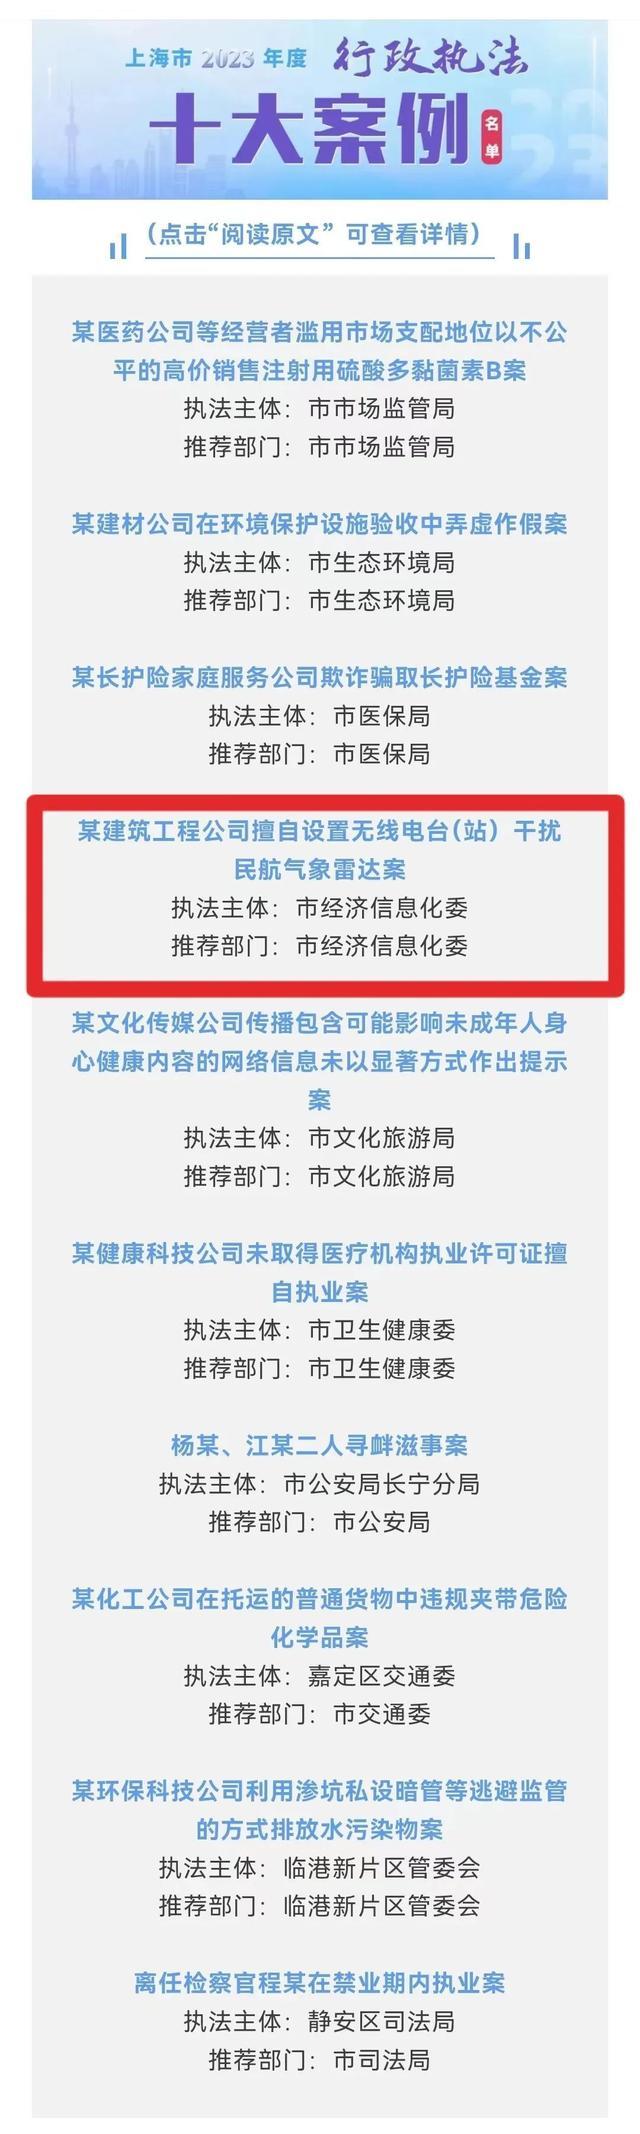 市经济信息化委执法案件连续两年获评上海市行政执法“十大案例”